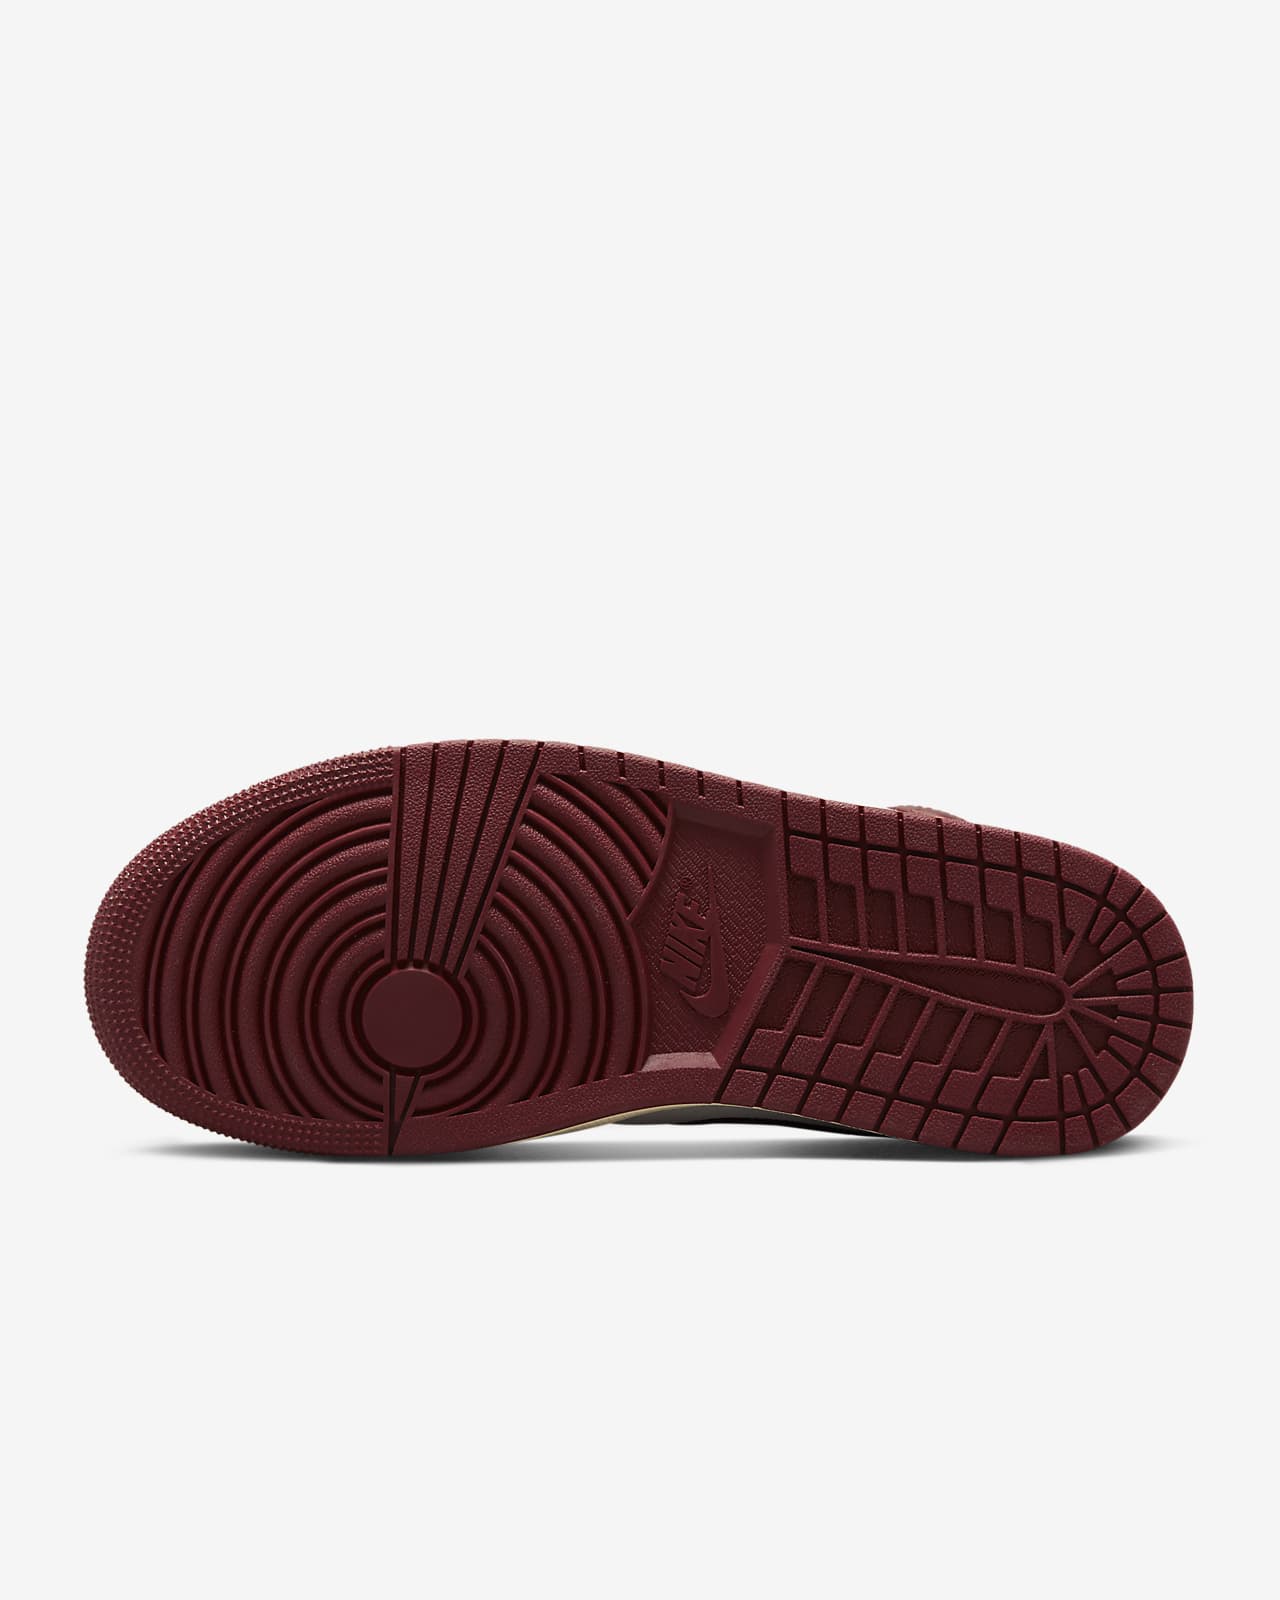 Air Jordan 1 Mid SE Women's Shoes. Nike NL